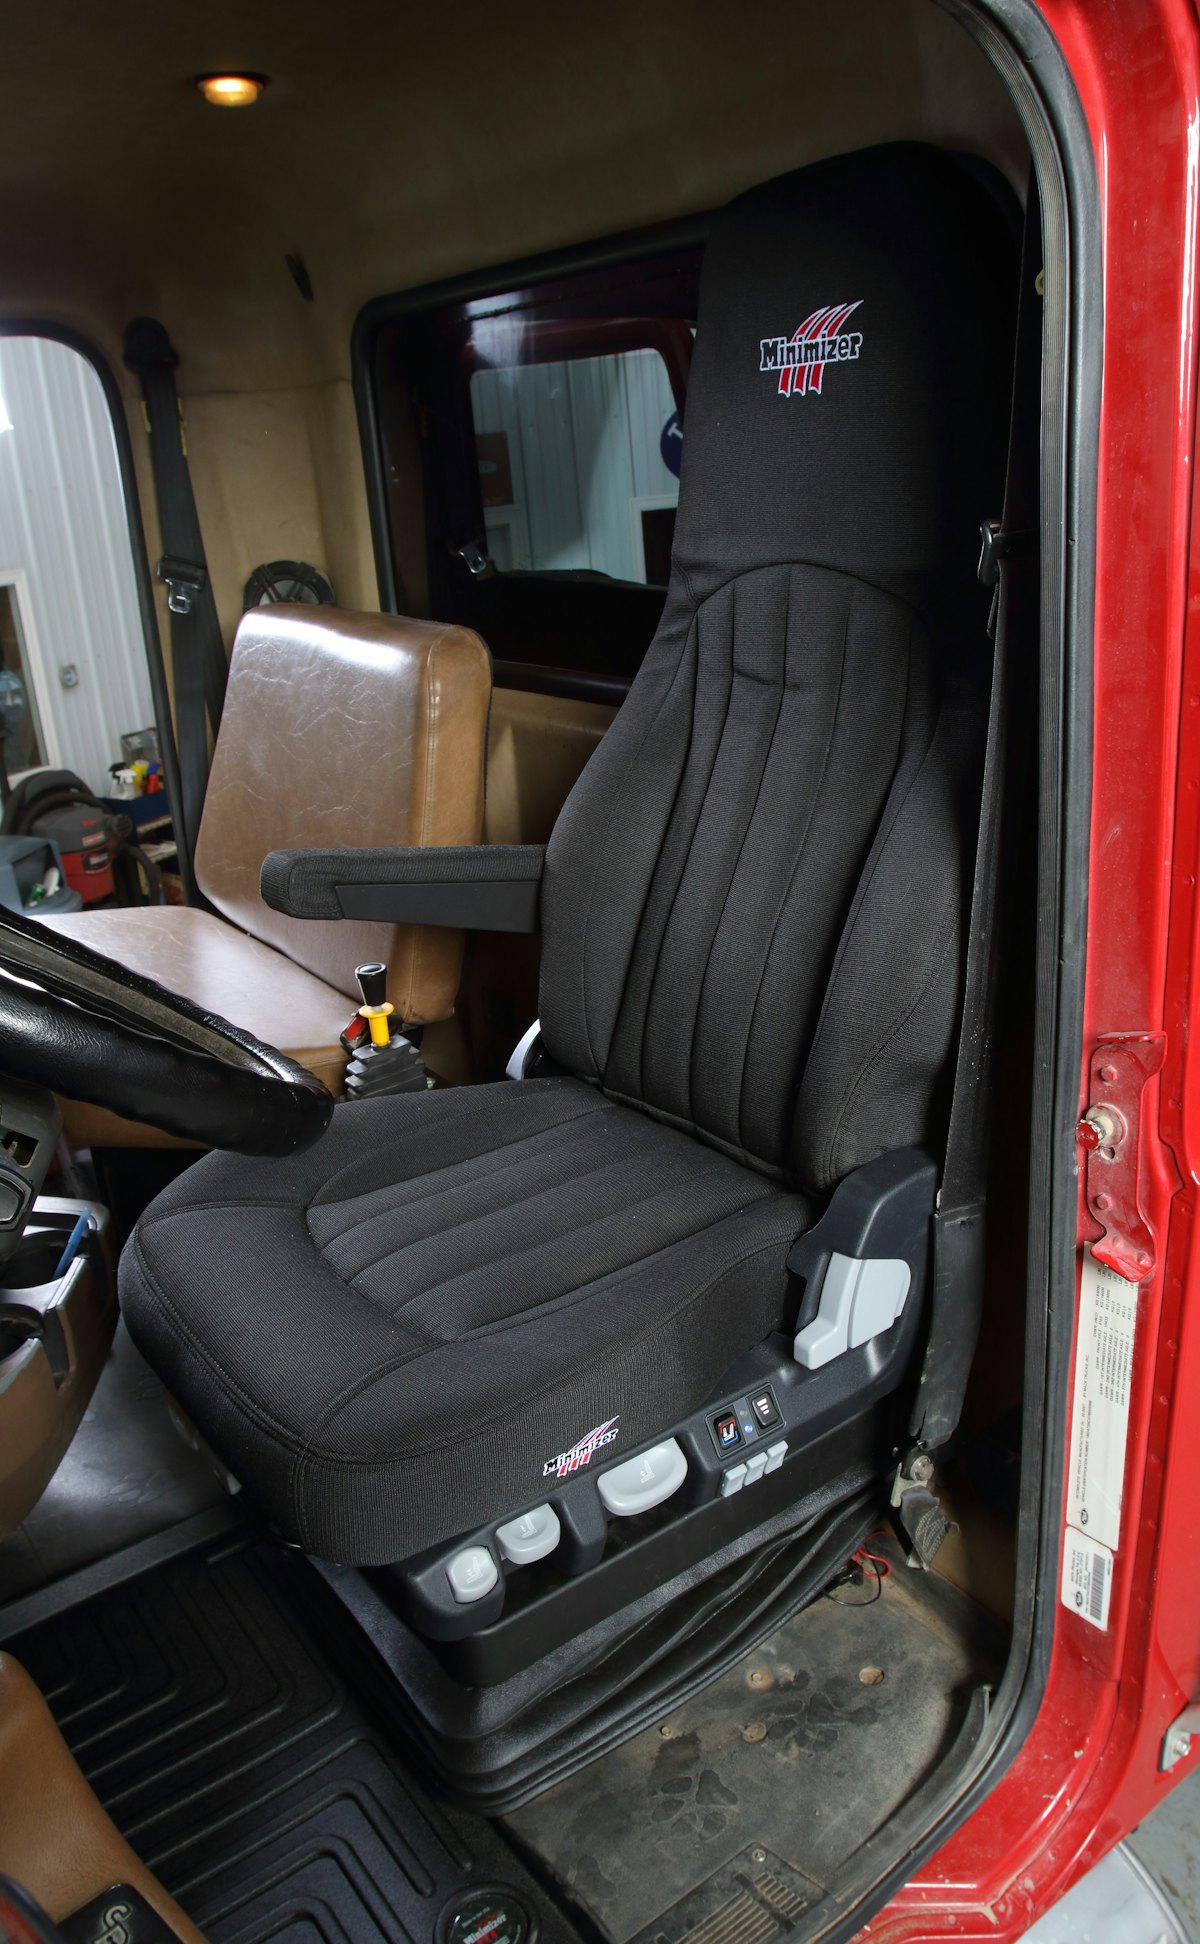 Minimizer's truck seats